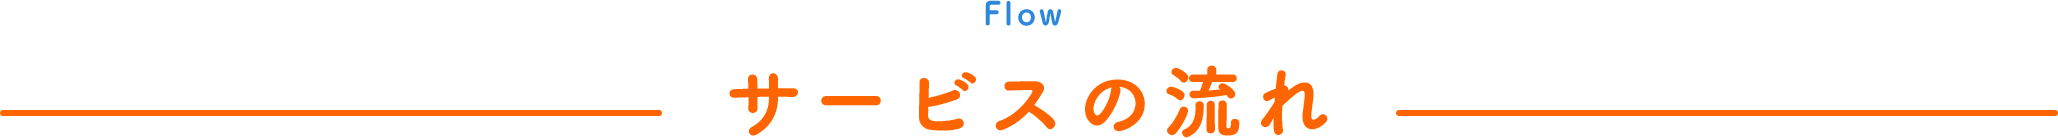 Flow サービスの流れ